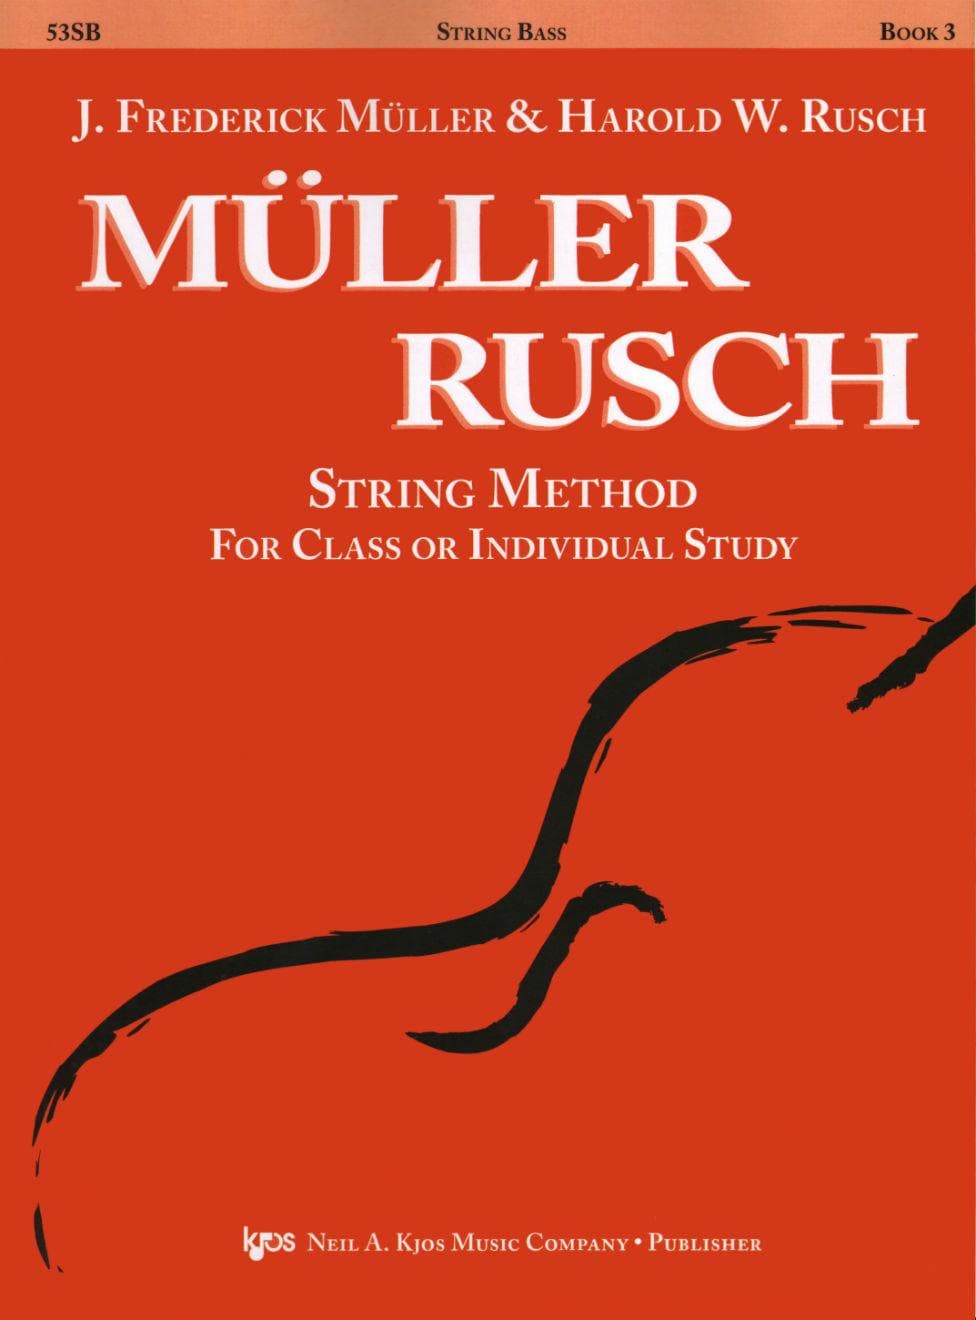 Müller/Rusch - String Method, Book 3 - Bass - Kjos Music Co